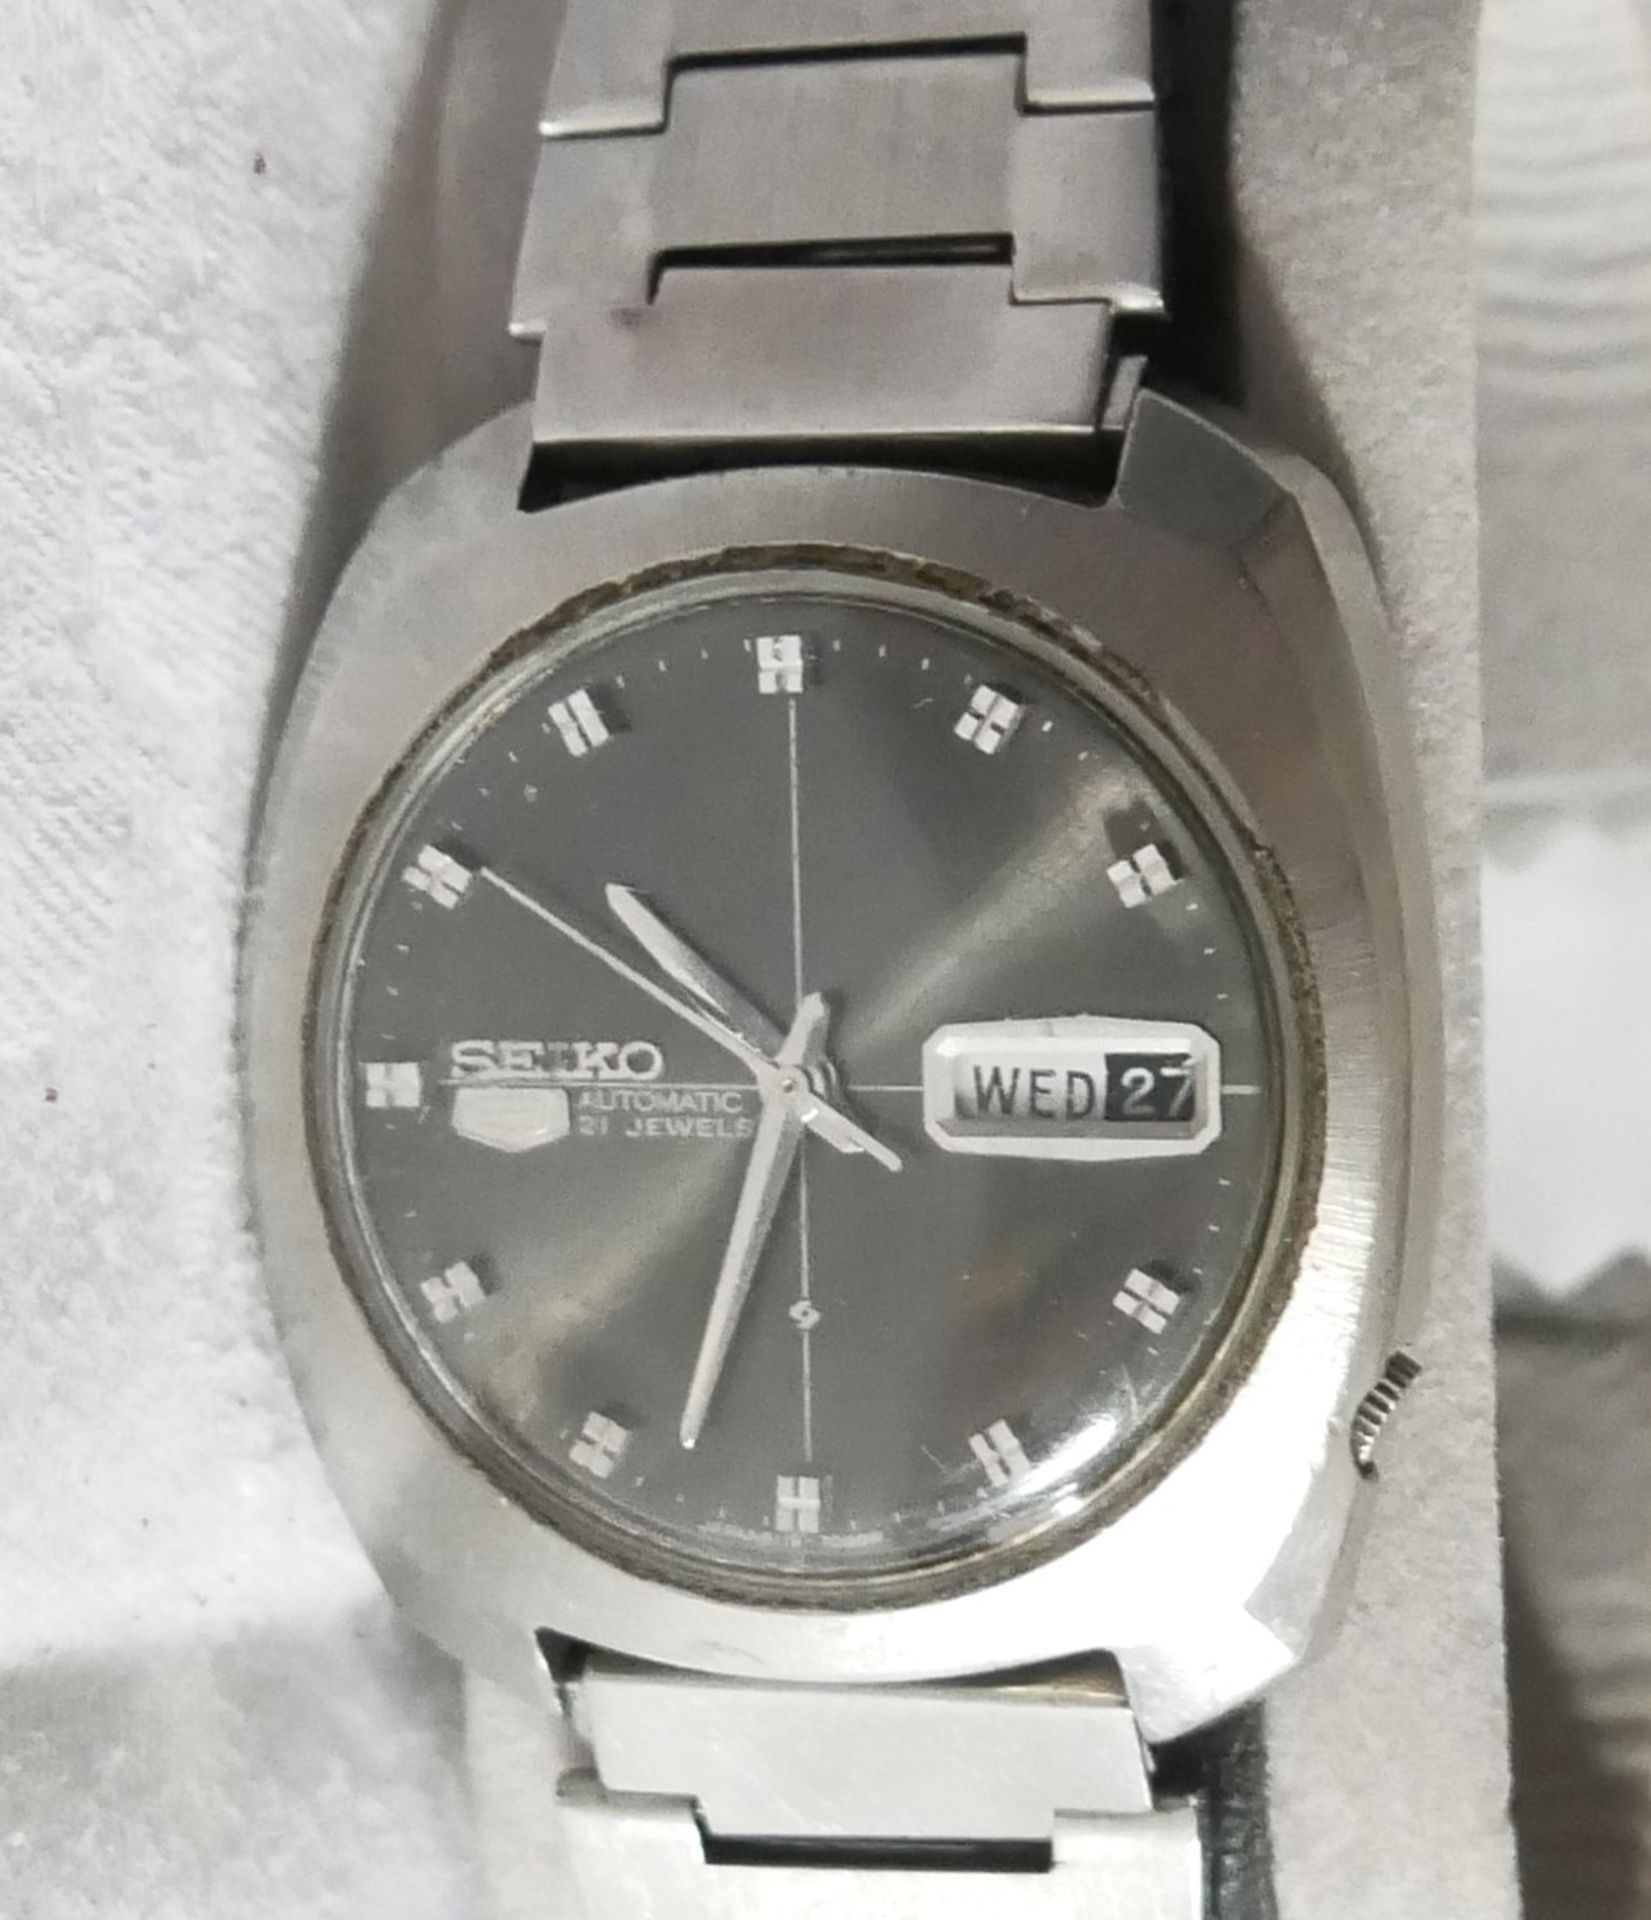 Vintage Sammler Herren Armbanduhr "Seiko 5" Automatik Edelstahl. Funktion geprüft, getragener - Bild 2 aus 2